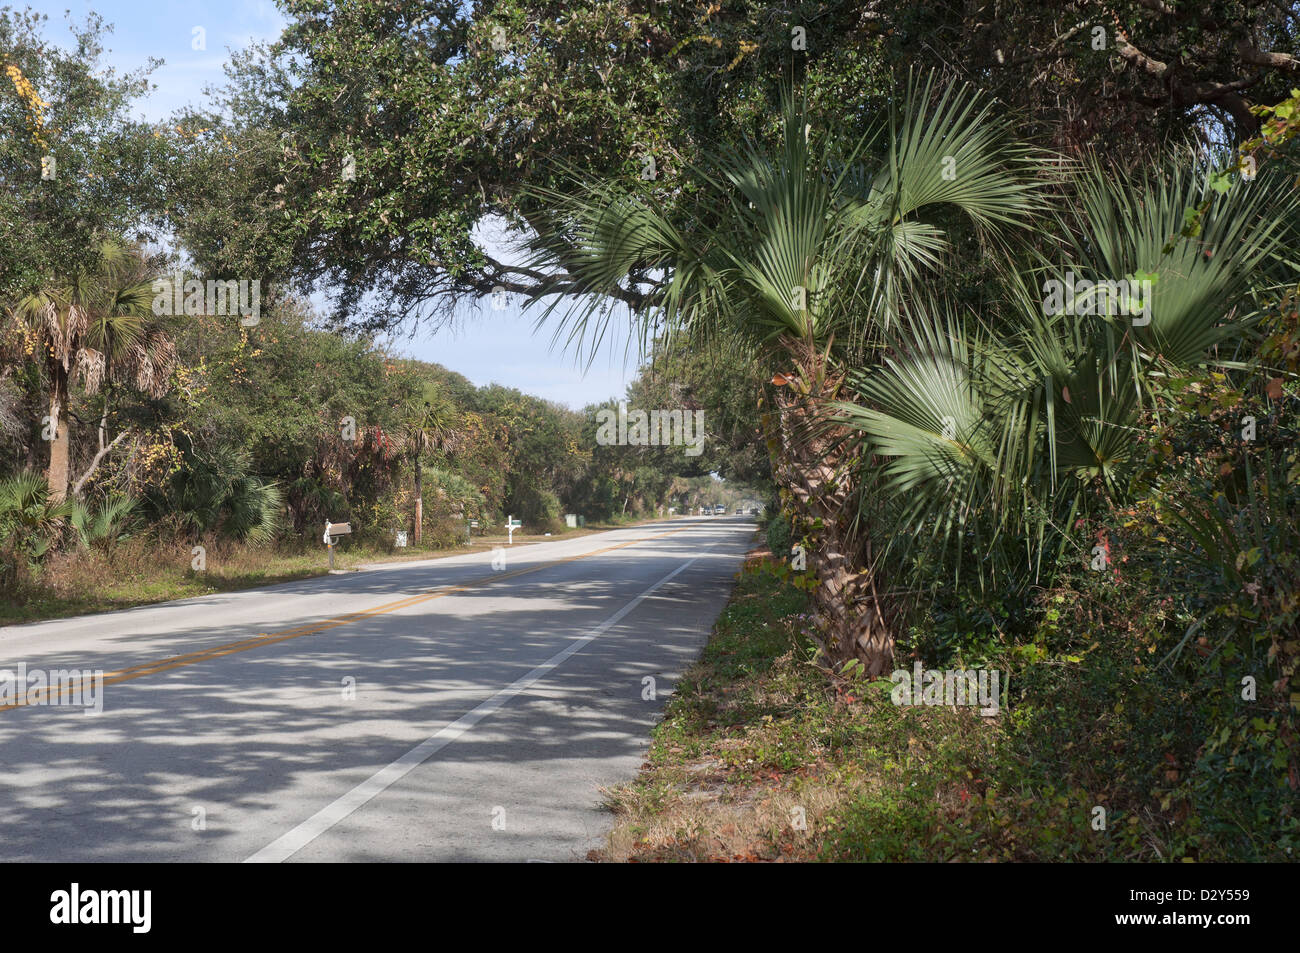 Lungo la storica strada costiera A1A in North Florida. Si tratta di un allevamento ufficialmente designato americana Byway. Foto Stock